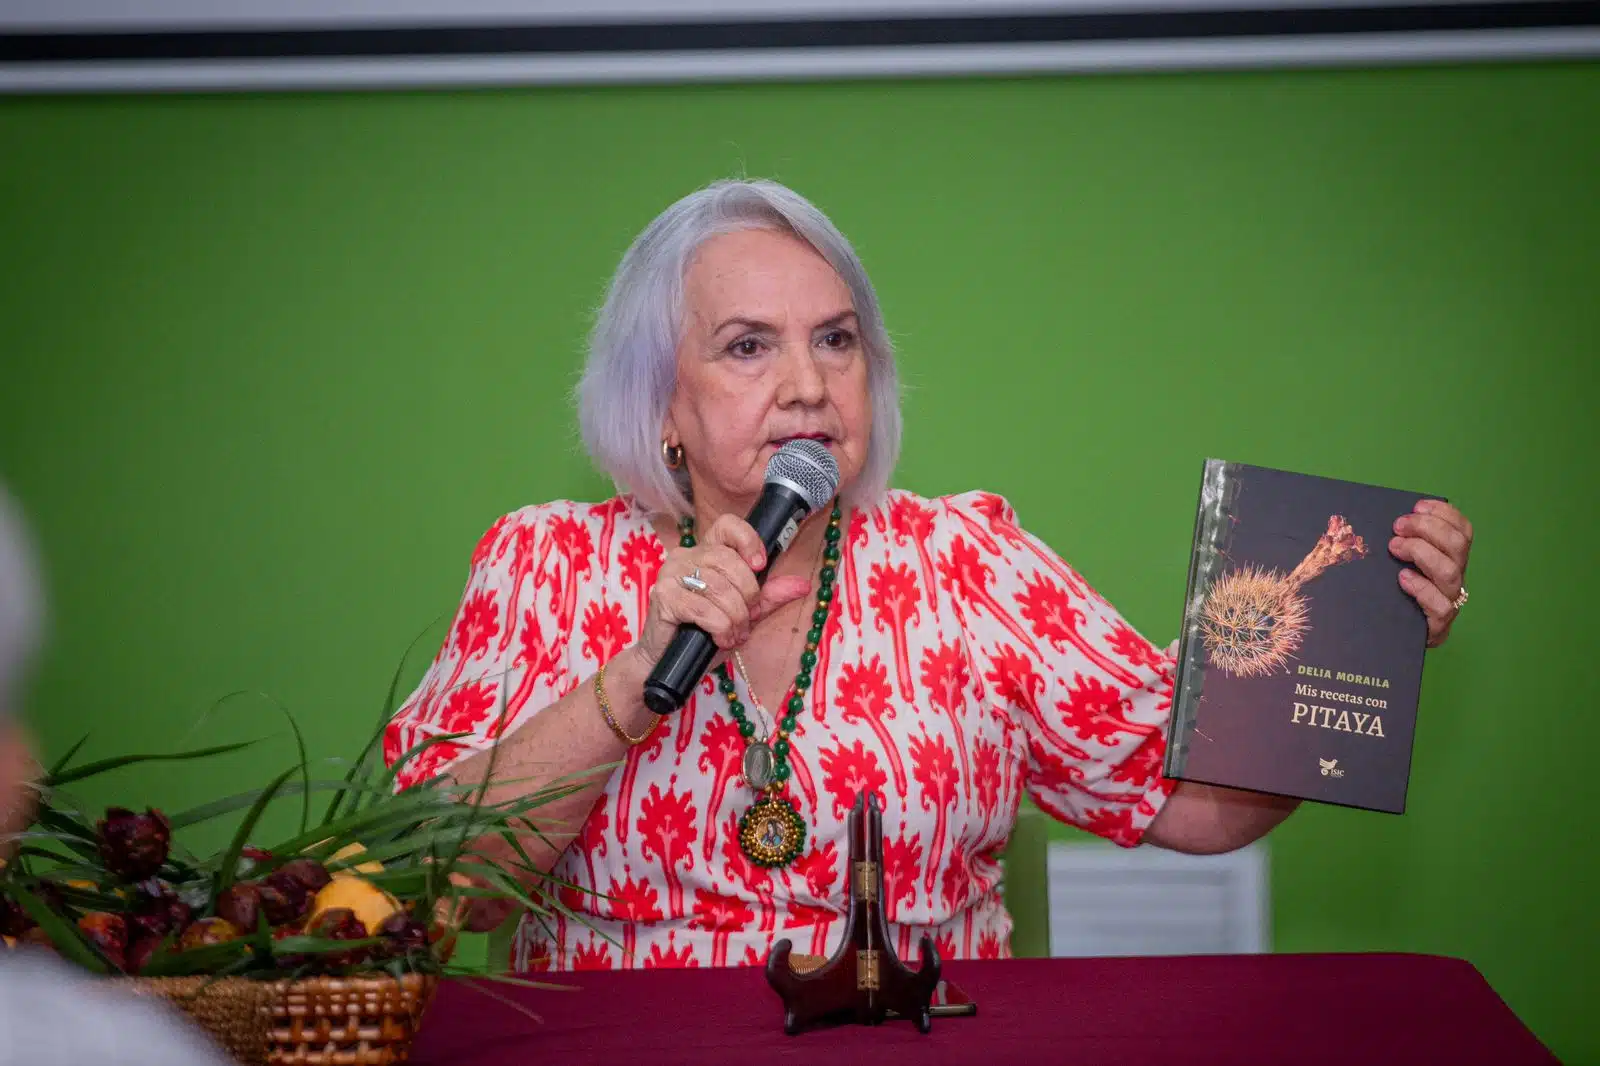 Delia Moraila presentó su libro 